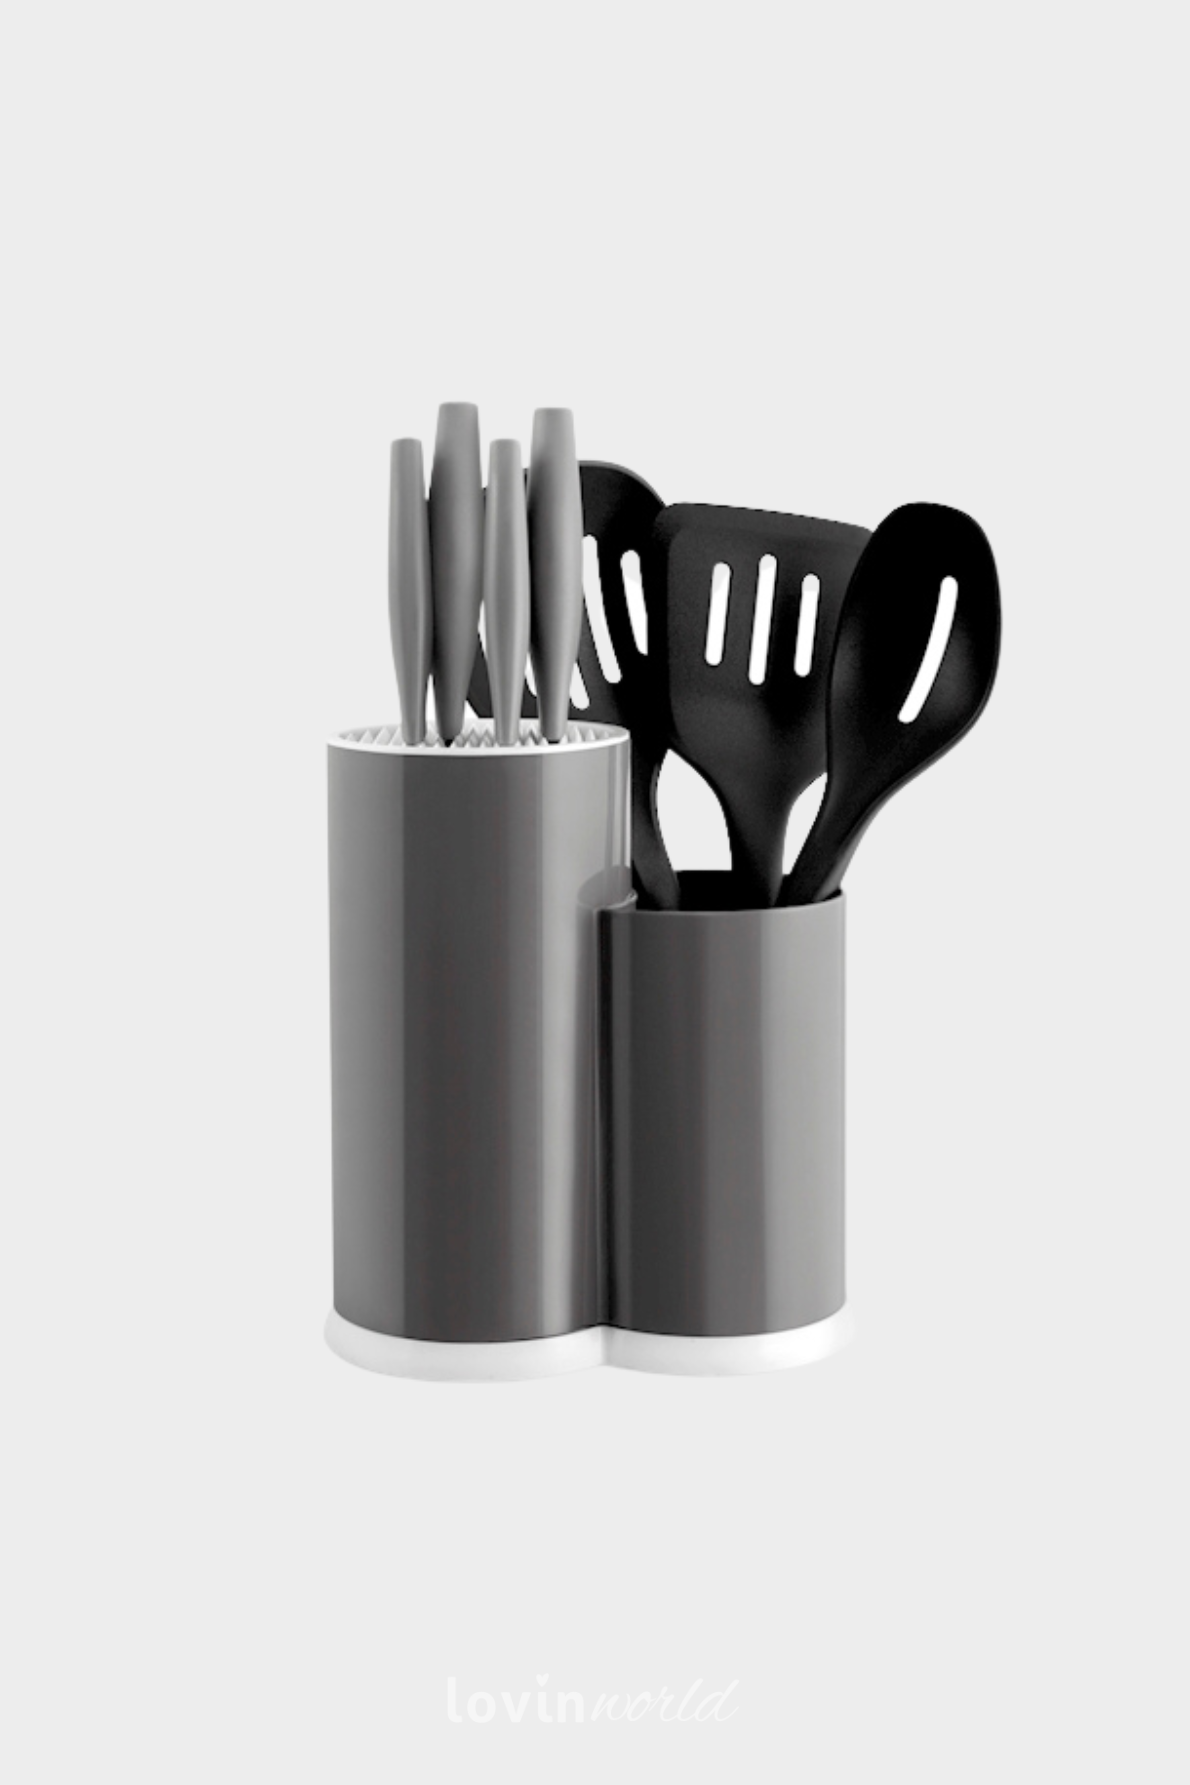 Ceppo con 4 coltelli e 3 mestoli in colore grigio-1